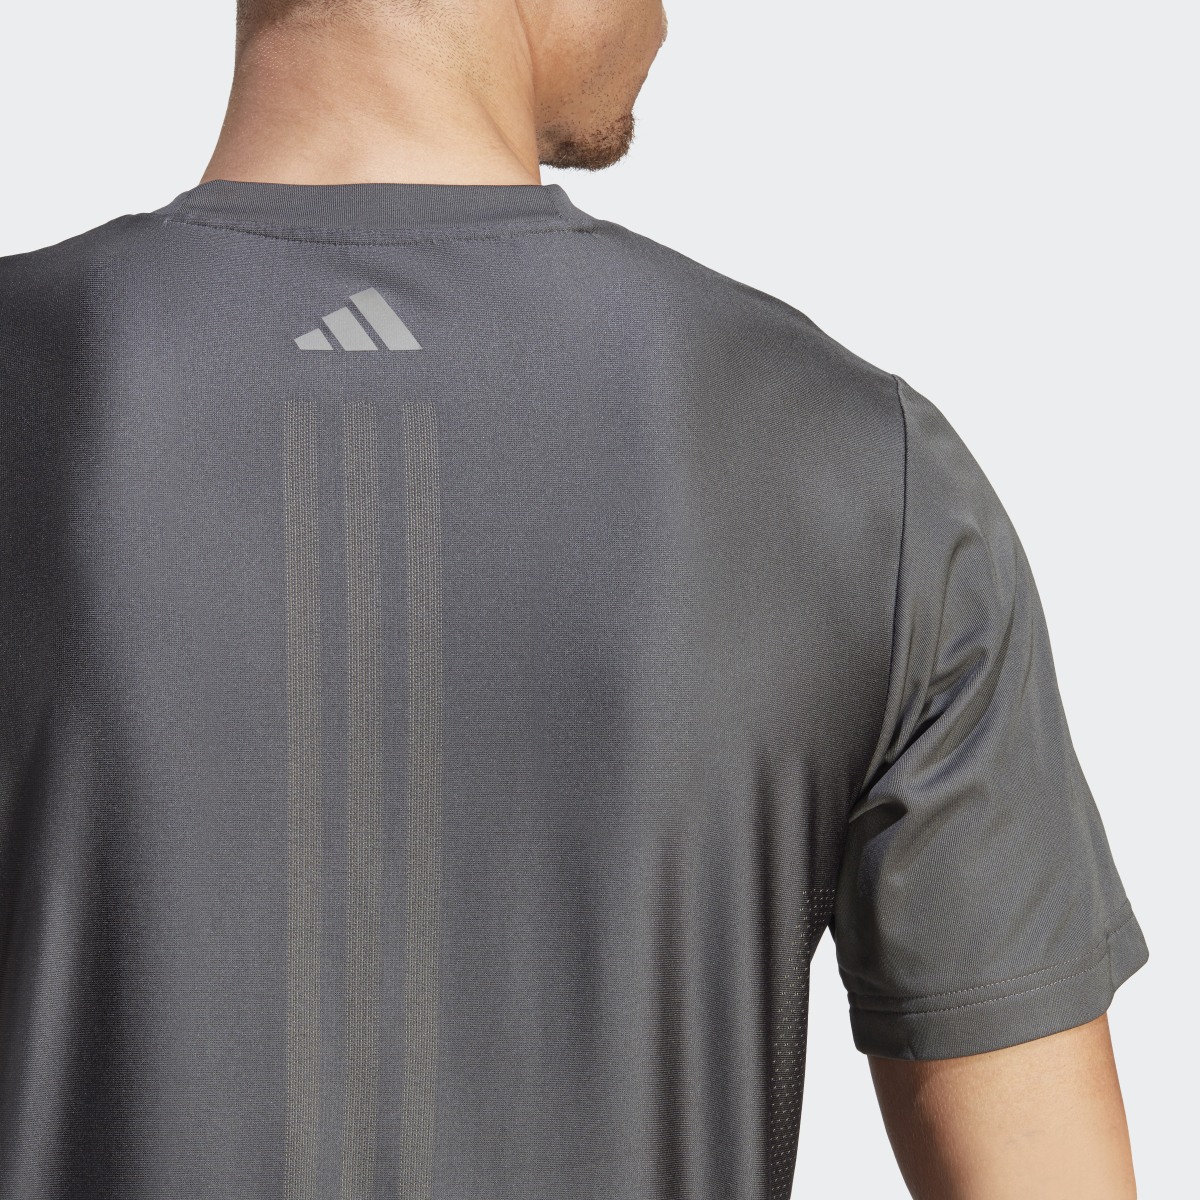 Adidas HIIT Workout 3-Stripes Tişört. 8